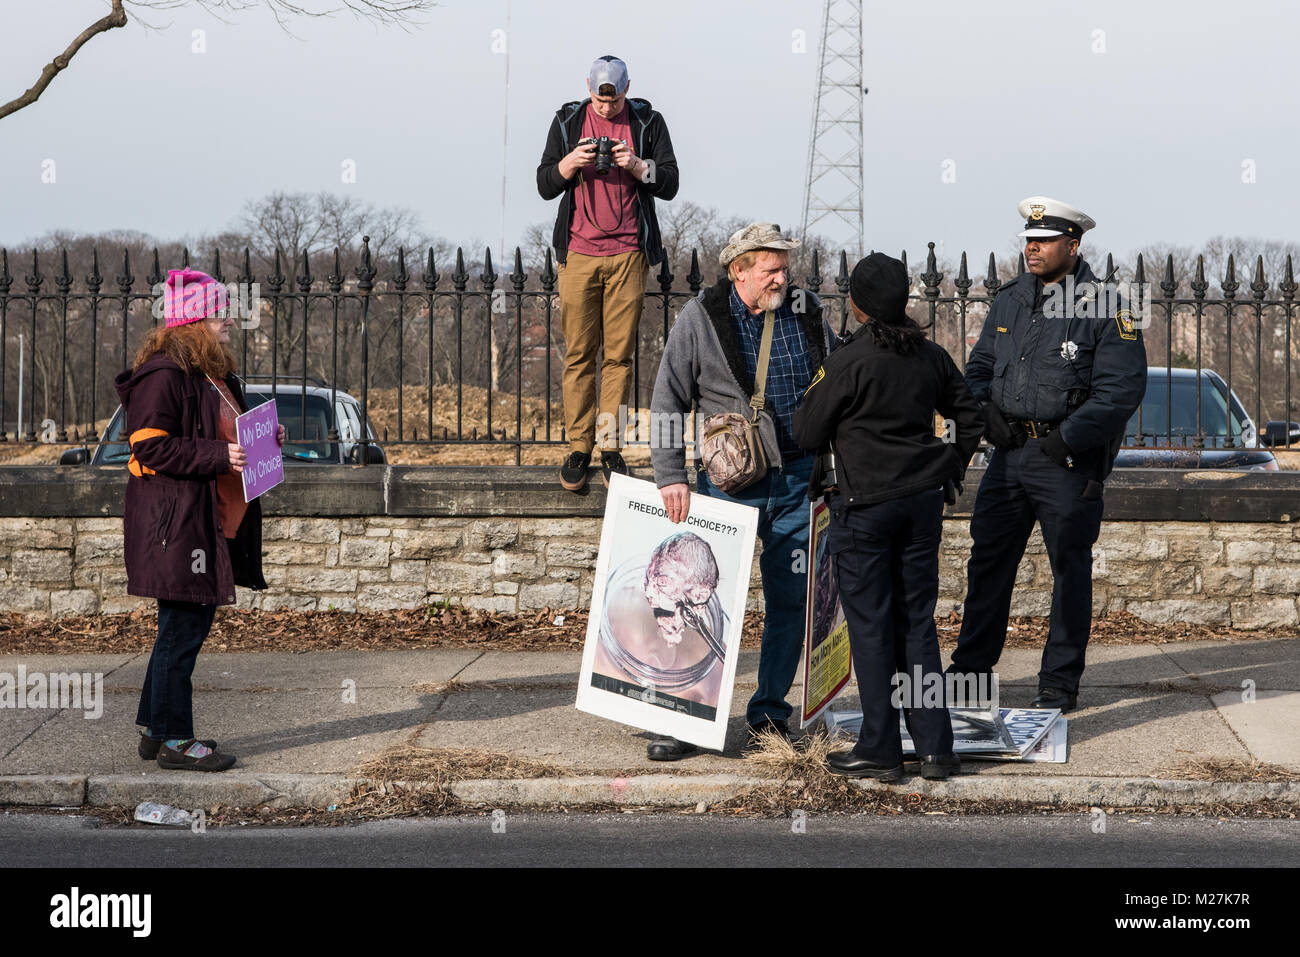 Cincinnati, Ohio, USA. 11 de febrero de 2017 policías hablan con anti aborto manifestante fuera de una Clínica de Planificación Familiar. A la izquierda hay un contador manifestante. Crédito: Caleb Hughes/Alamy Live News. Foto de stock